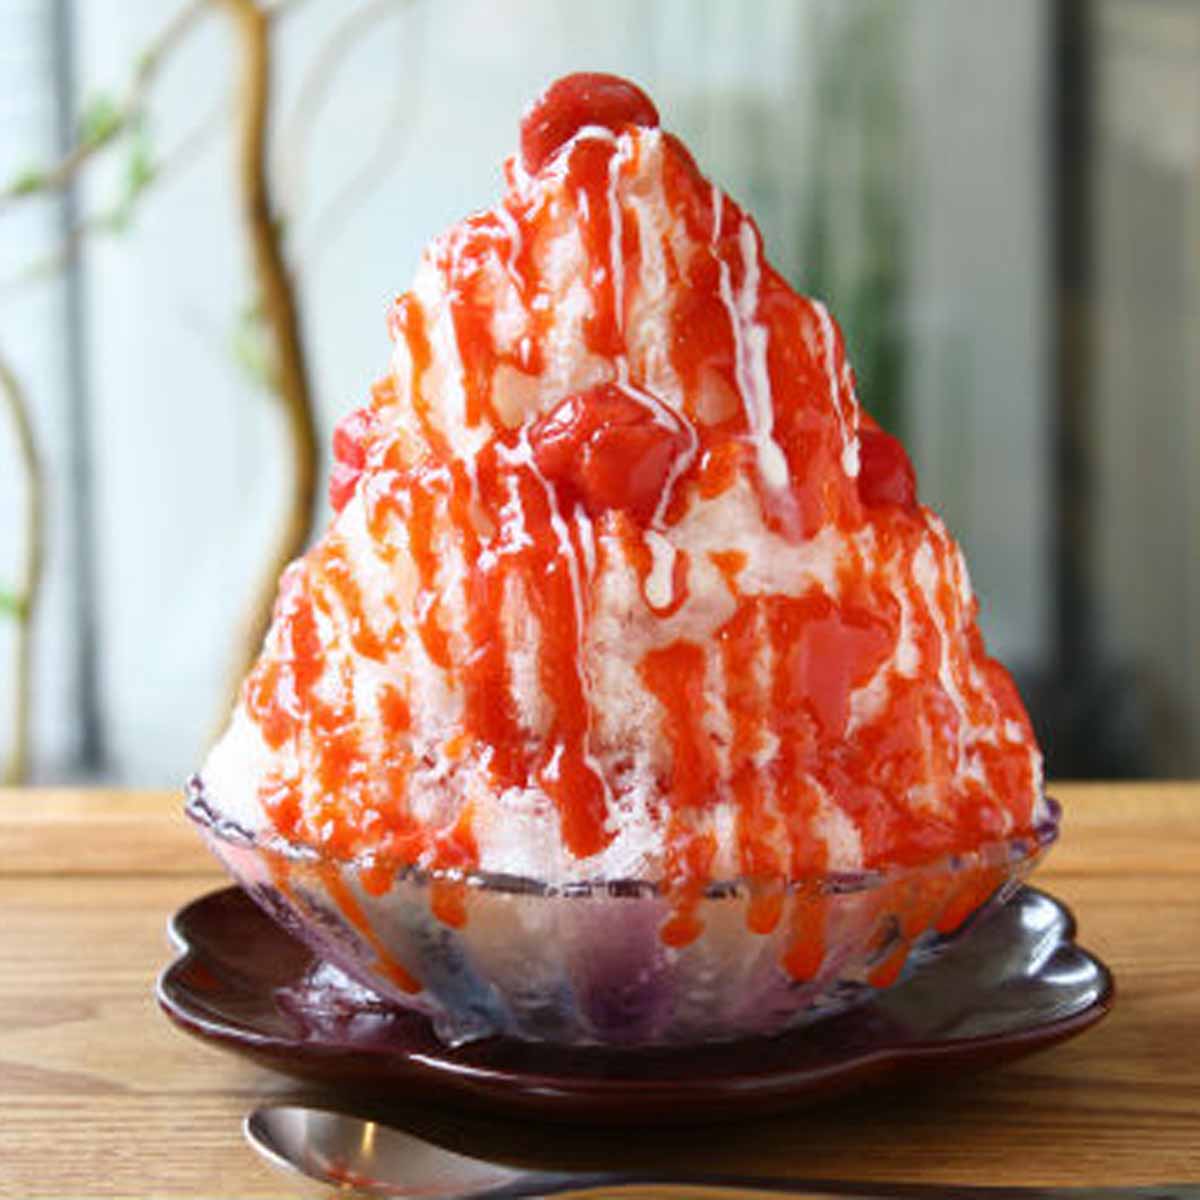 東京・麻布十番「麻布野菜菓子」のかき氷